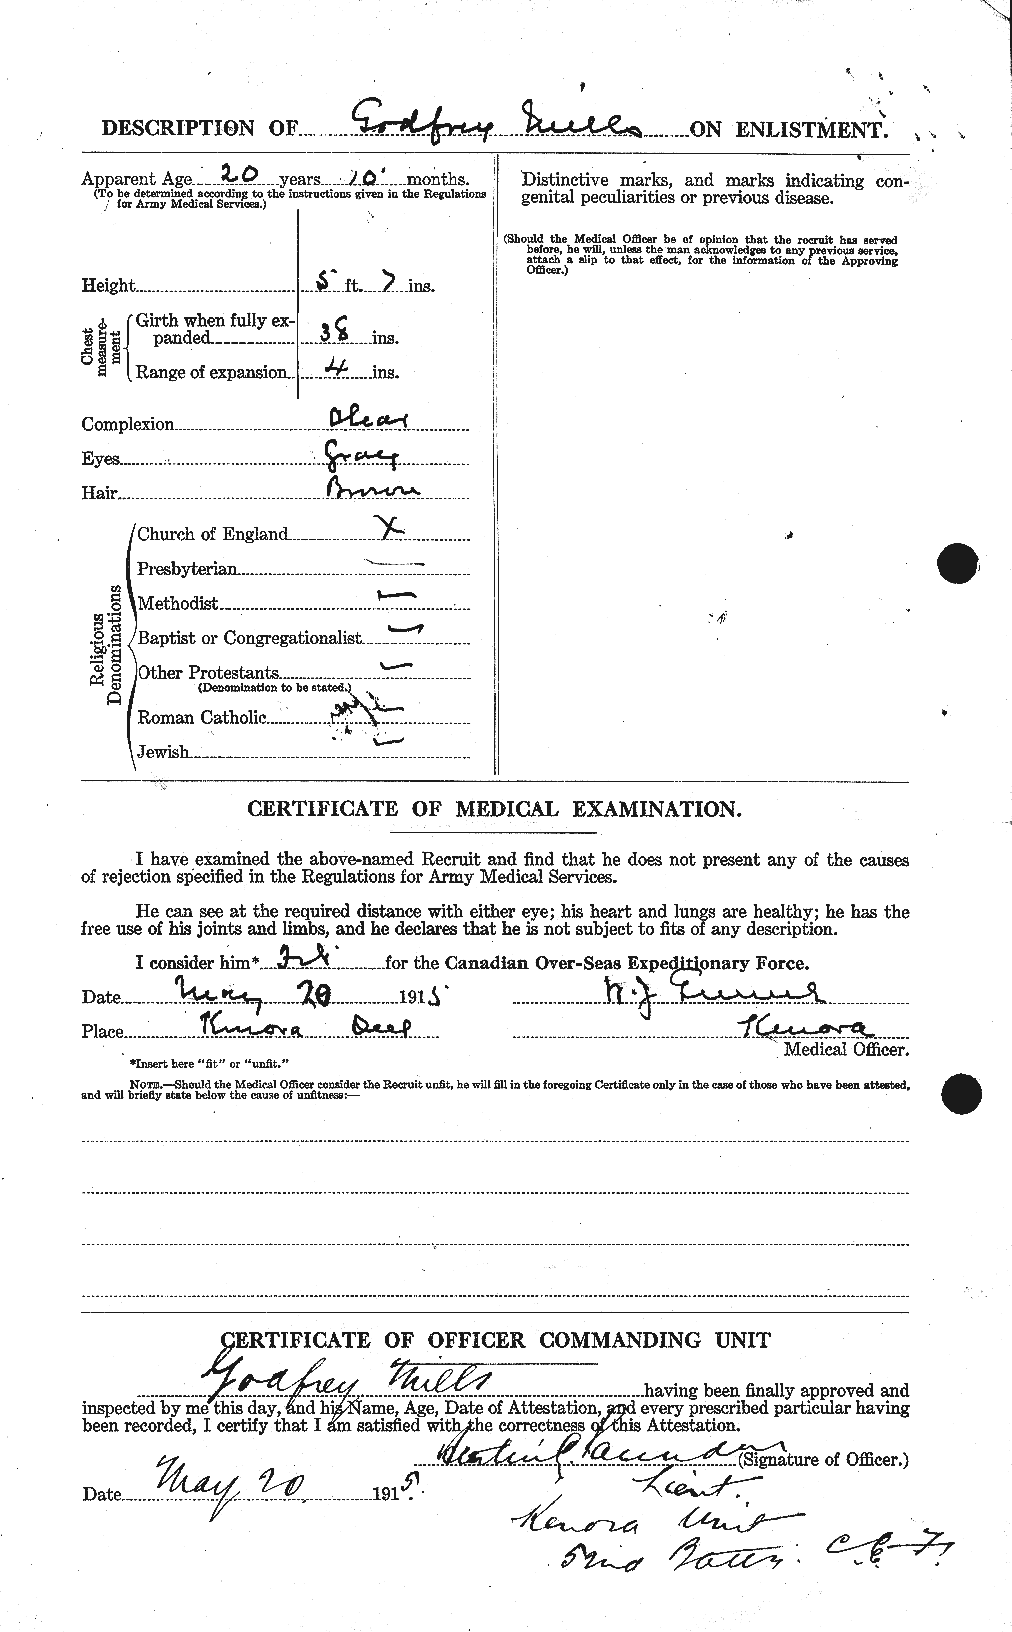 Dossiers du Personnel de la Première Guerre mondiale - CEC 498220b